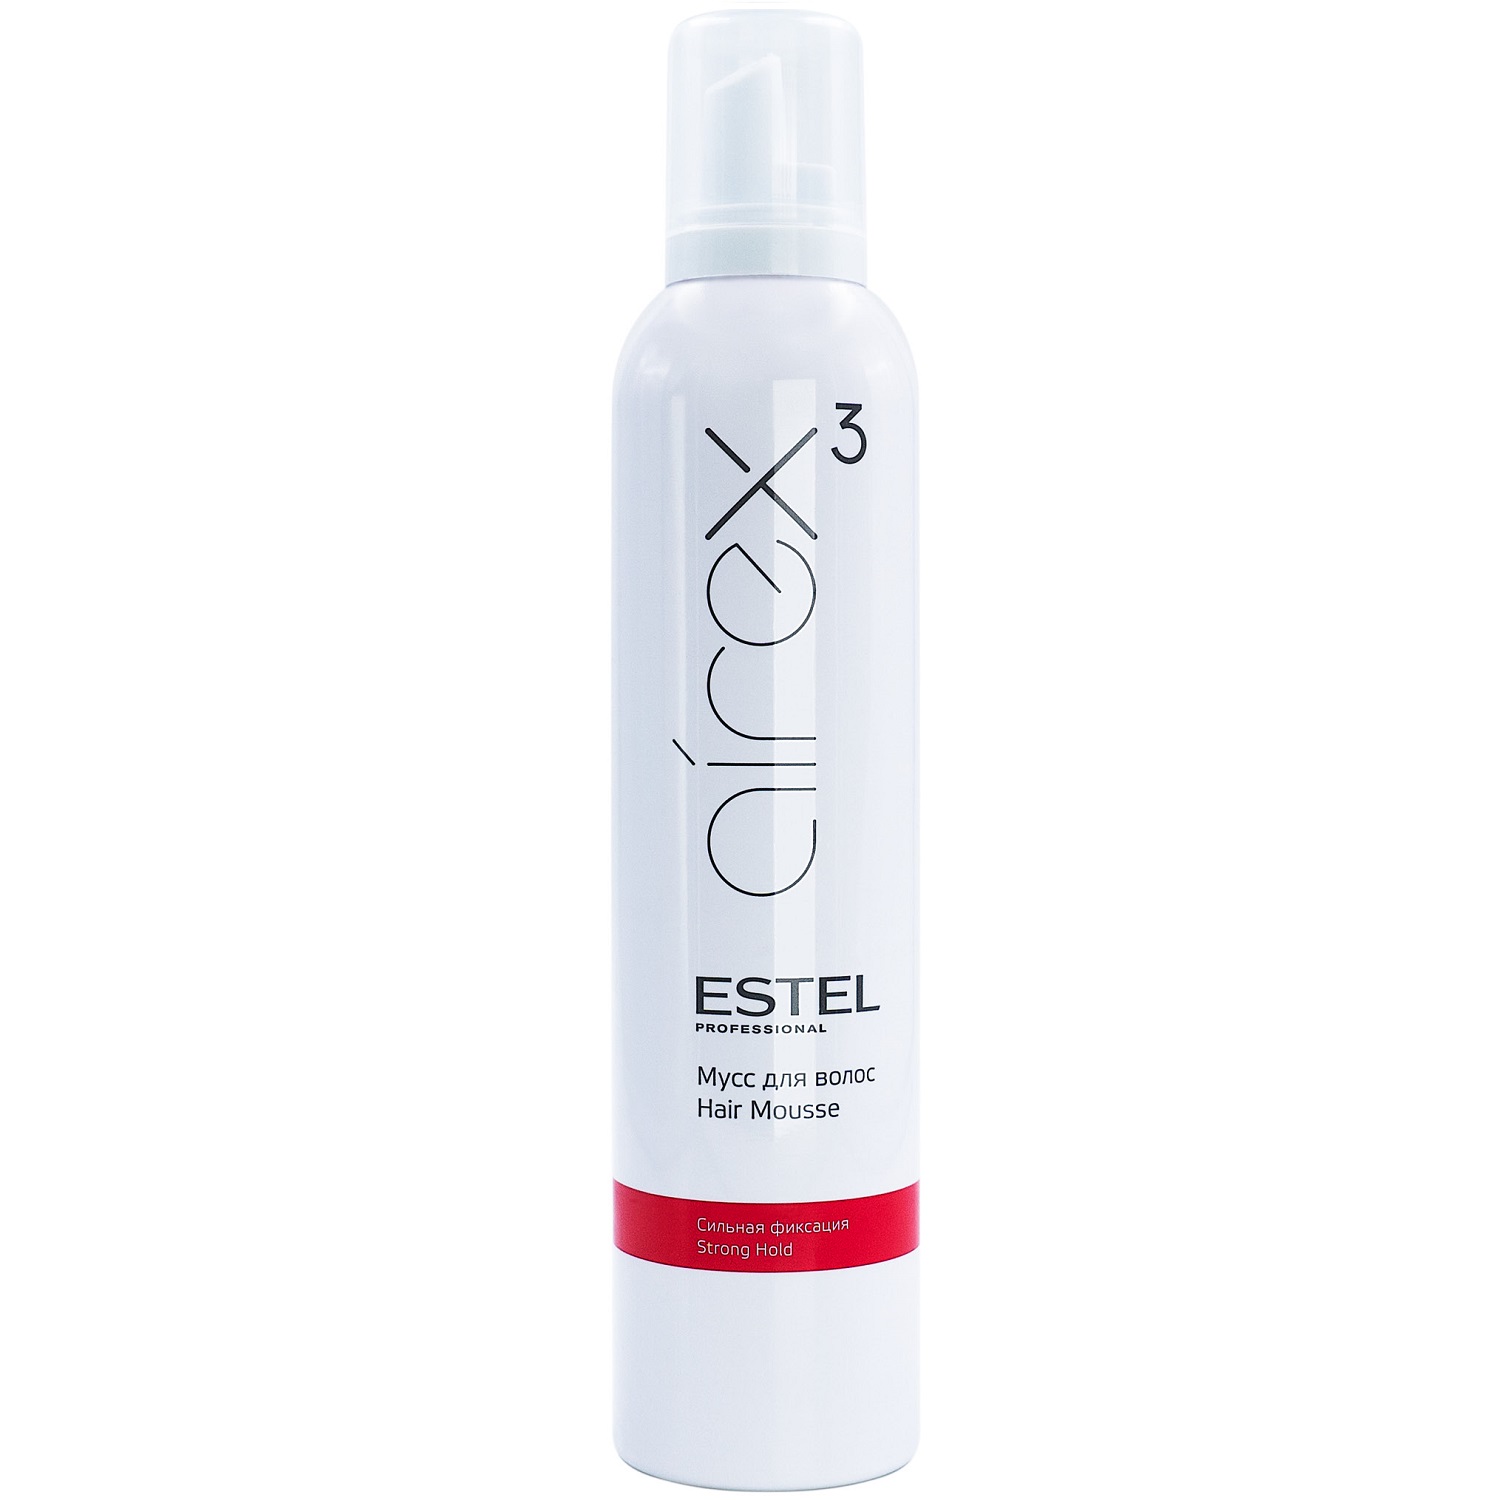 Estel Мусс для волос сильная фиксация, 300 мл (Estel, Airex) estel глина для моделирования волос с матовым эффектом пластичная фиксация 2 65 мл estel airex